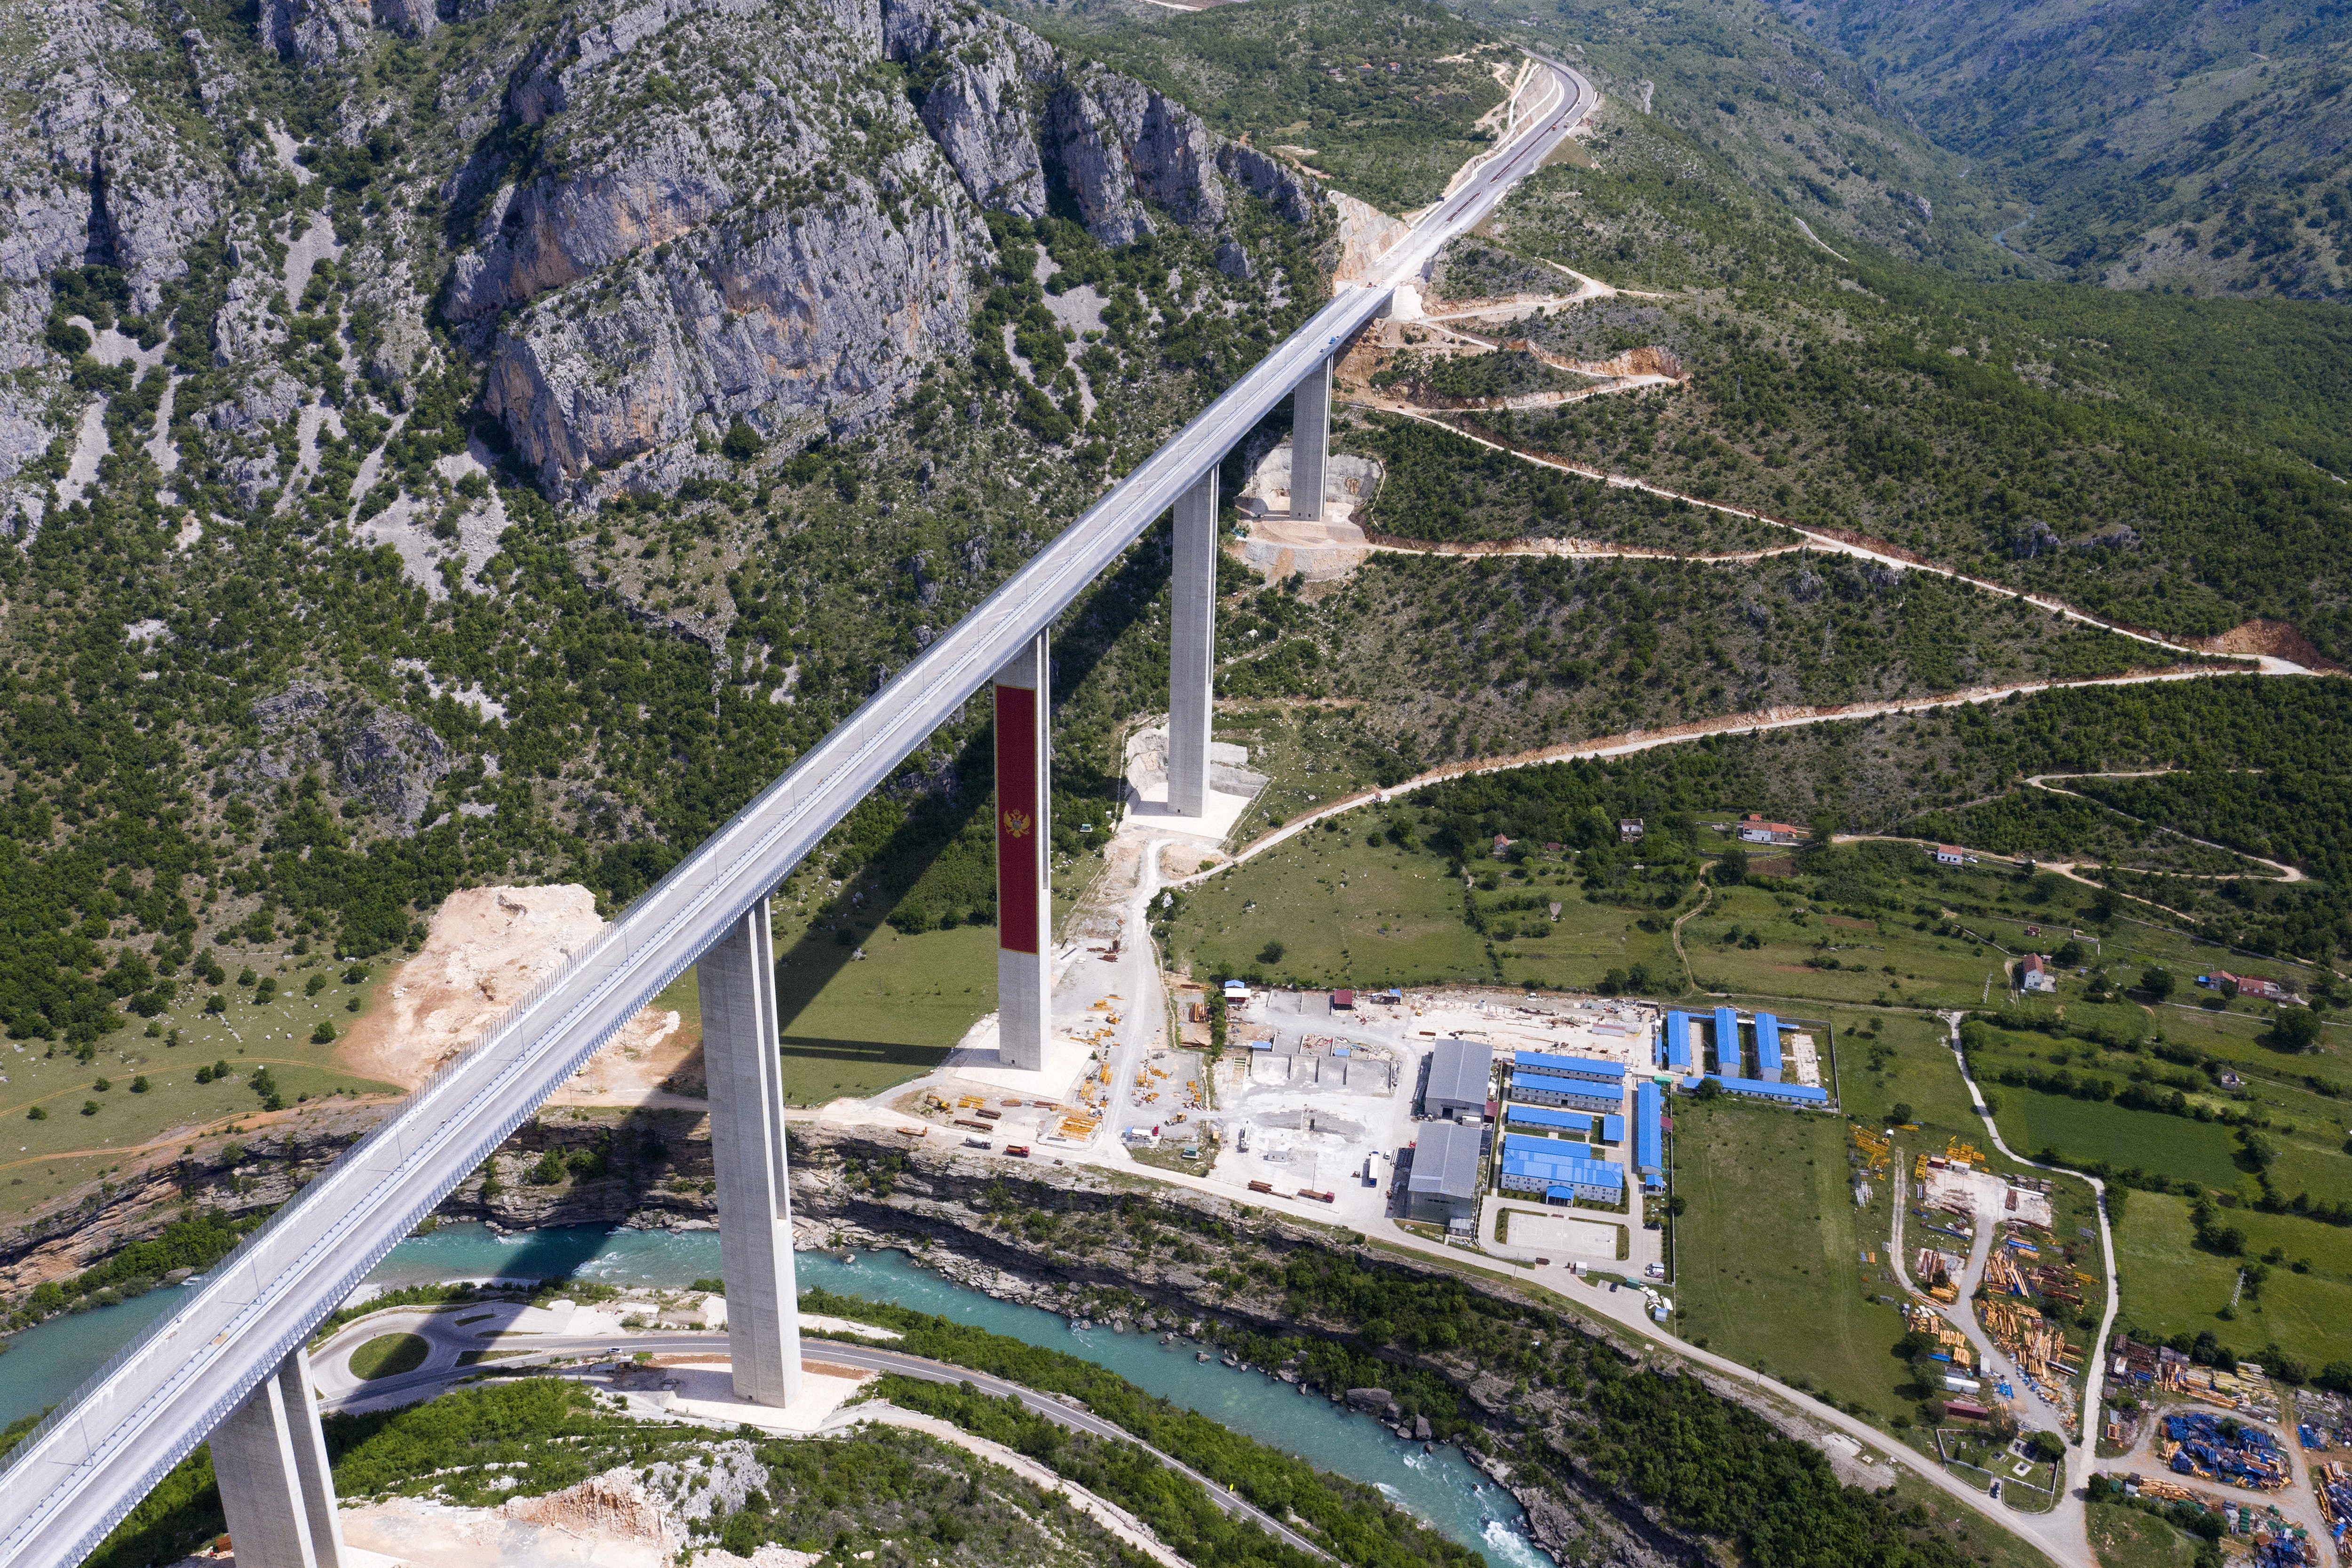 Rodovia de US$ 1 bilhão não leva a lugar nenhum em Montenegro (e pode quebrar o país europeu) thumbnail